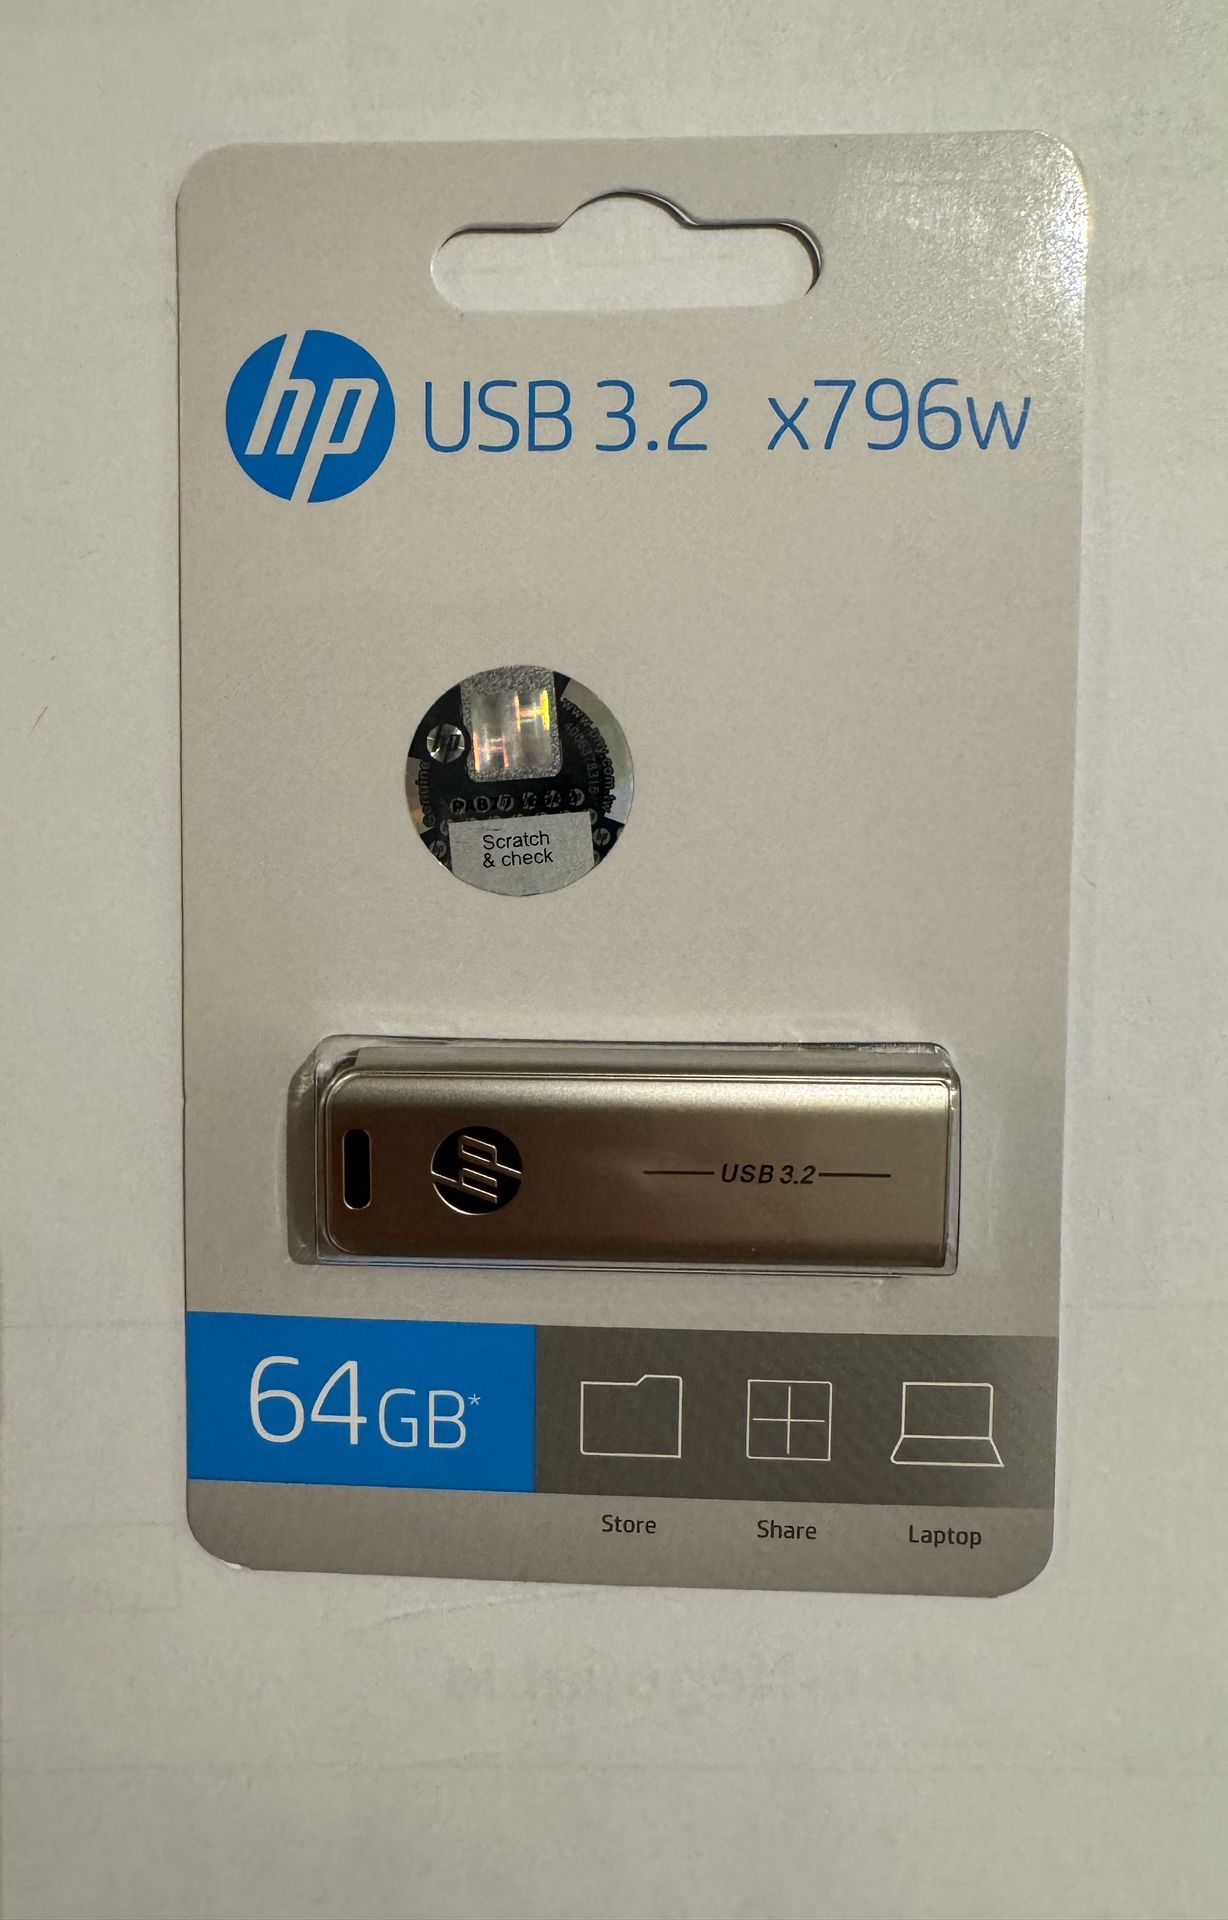 HP 64 GB USB 3.2 x 796w Flash Drive USA